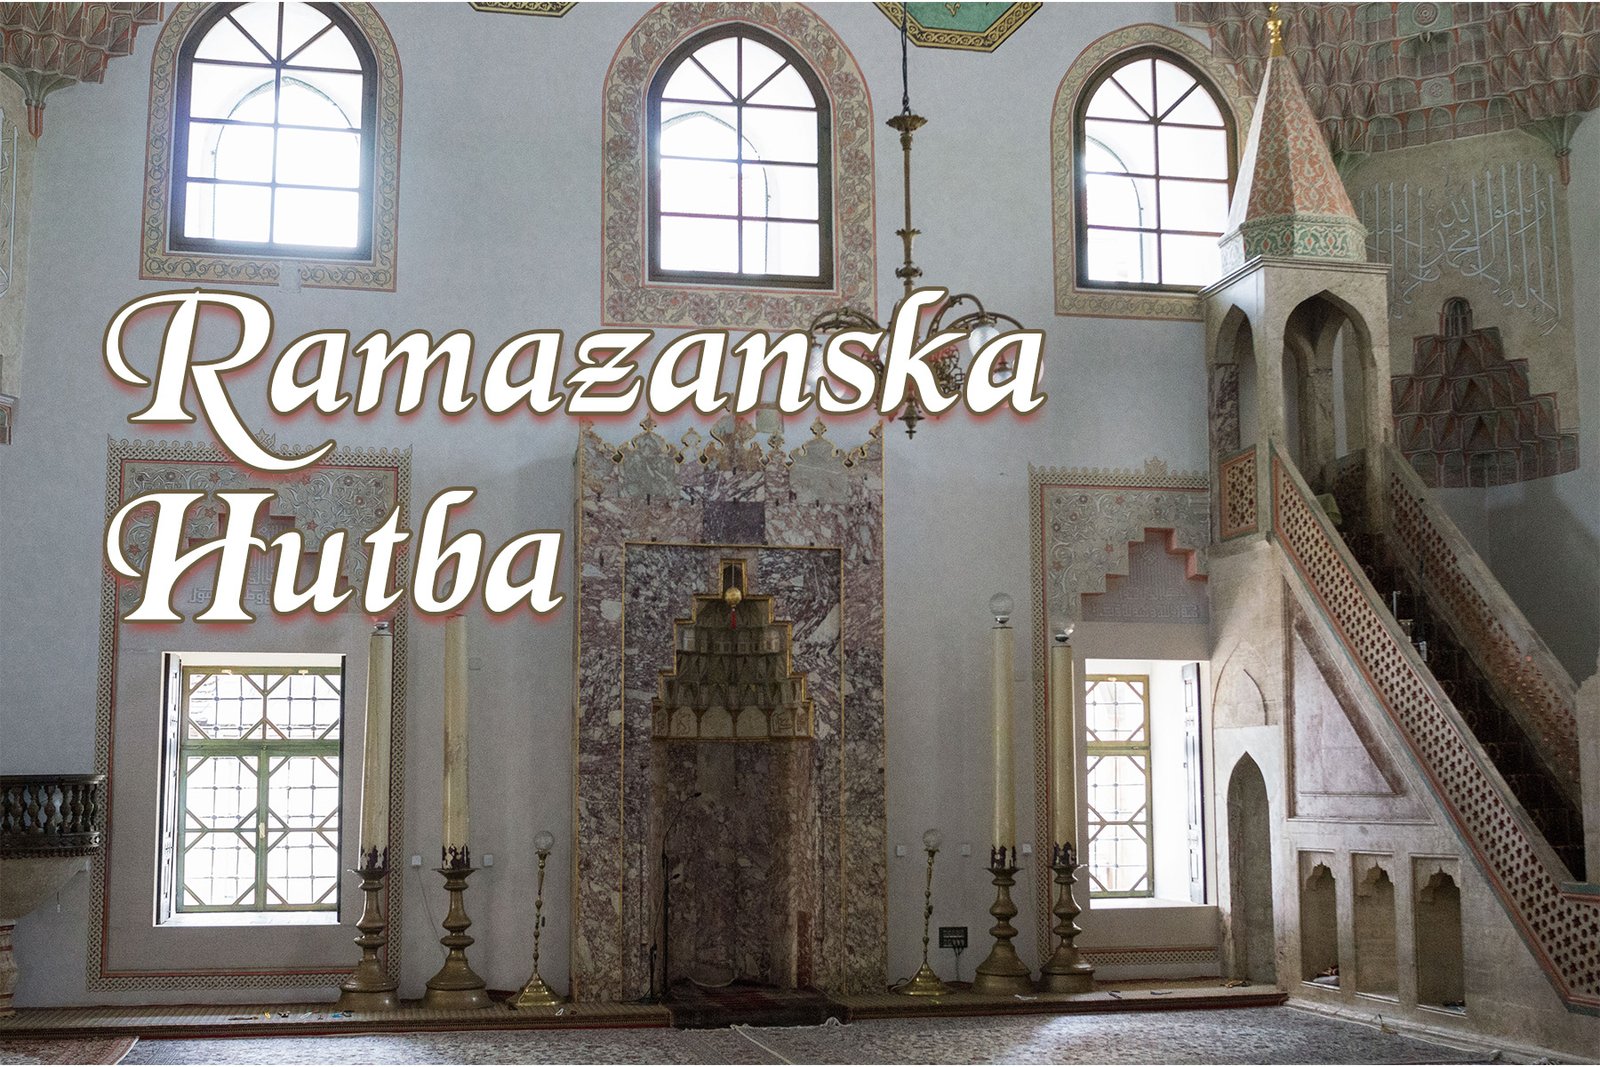 RamazanskaHutba